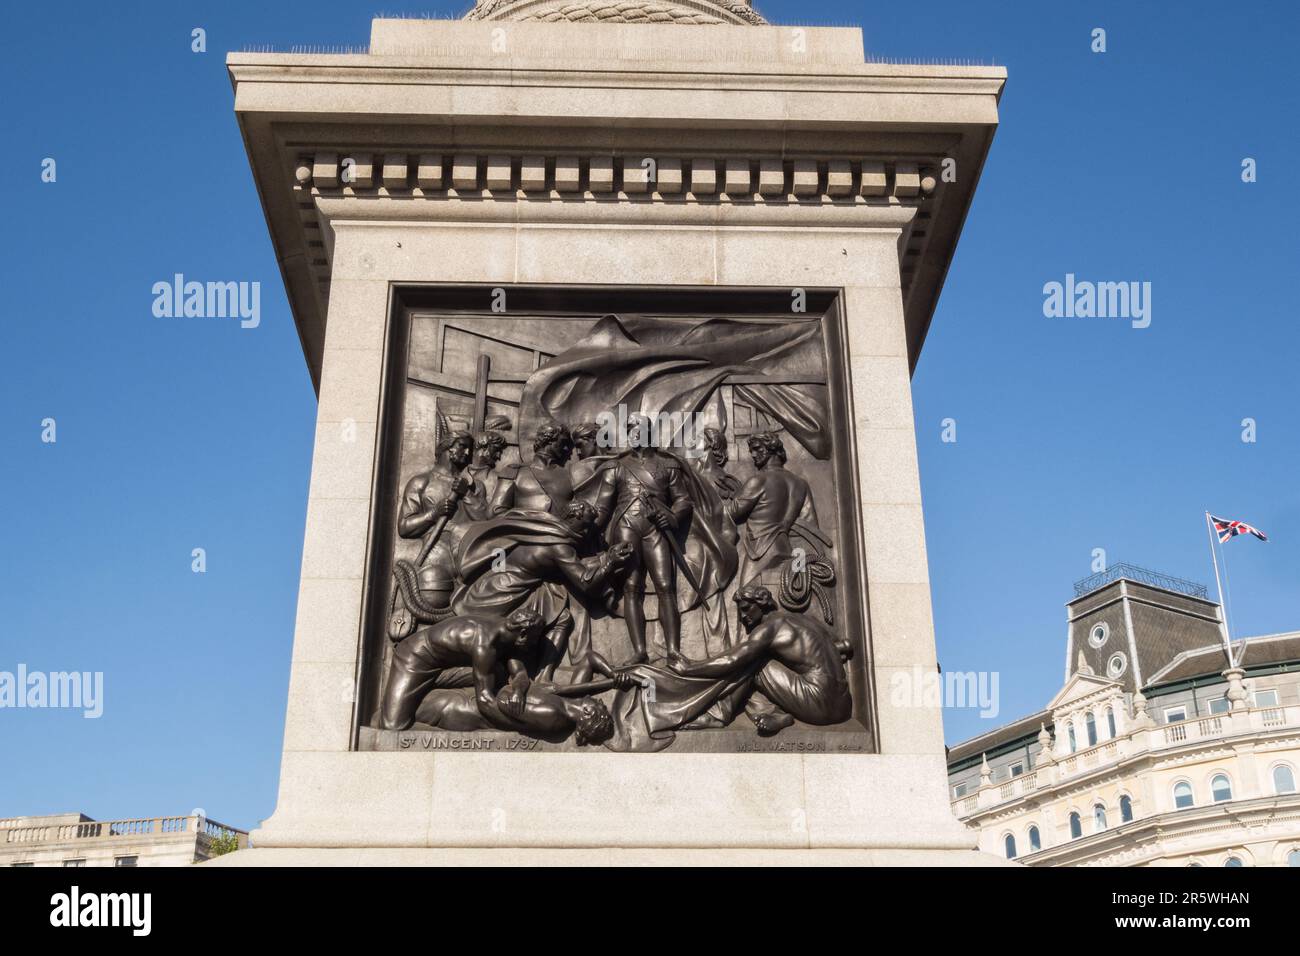 Plaque de bronze à la base de la colonne de Nelson représentant Lord Nelson à la bataille de Cape St.Vincent - Trafalgar Square, Londres, Angleterre, Royaume-Uni Banque D'Images